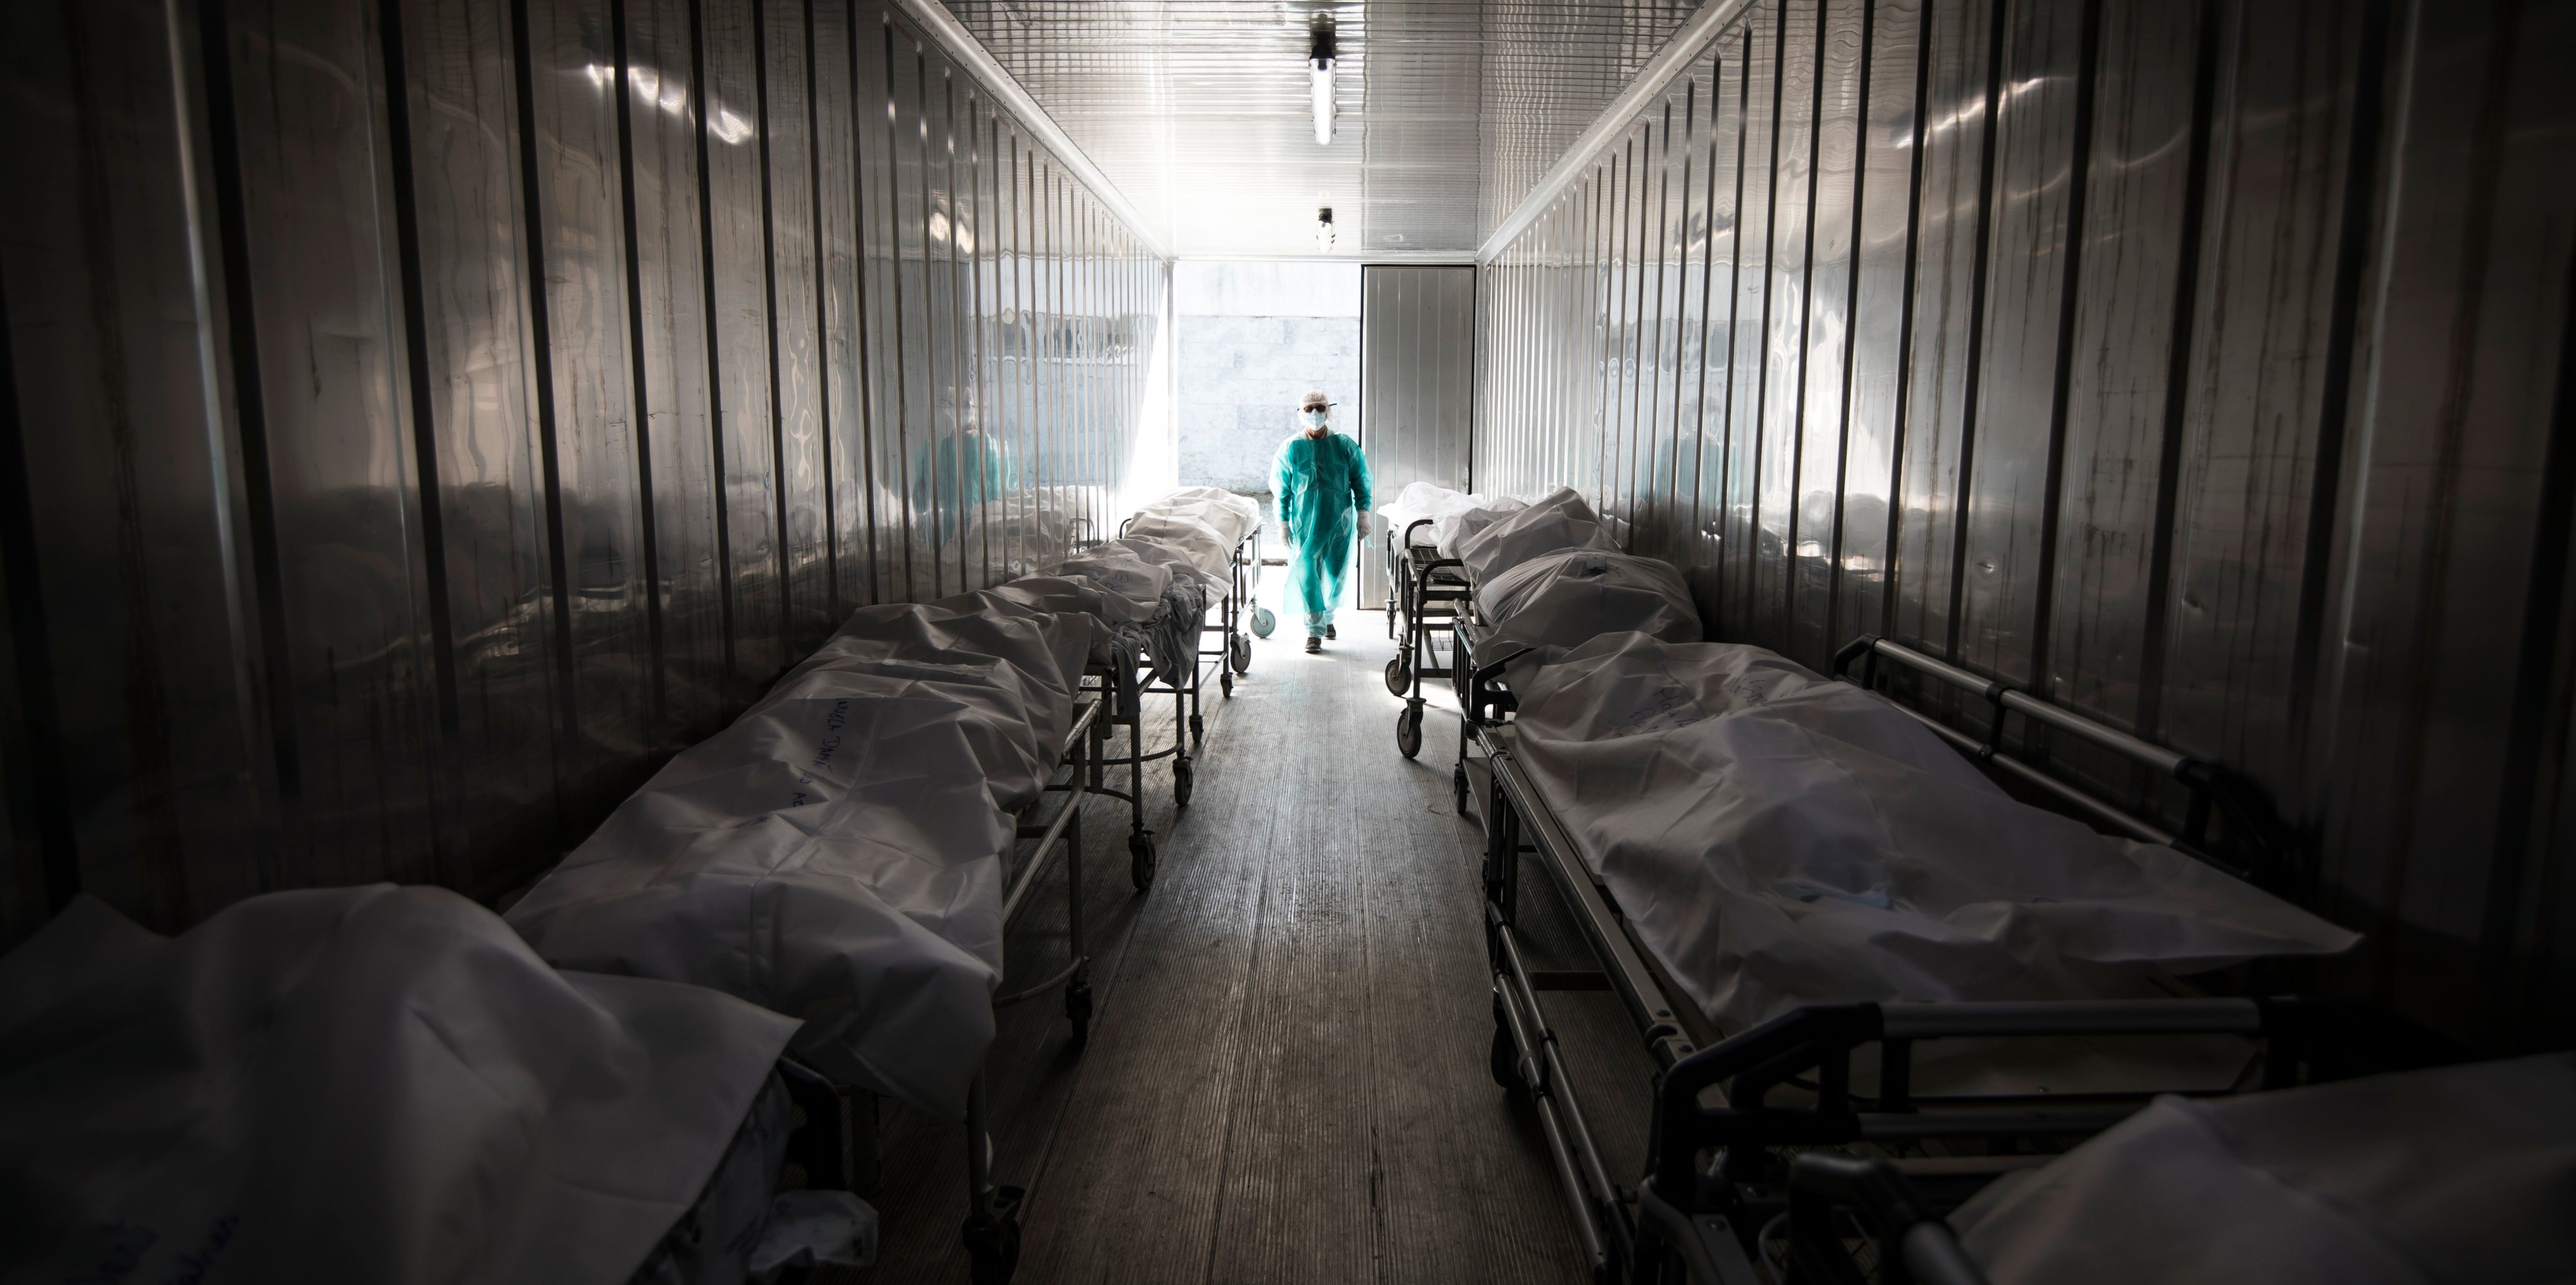 Fotografia de um dos contentores que está num hospital da Grande Lisboa. Tem capacidade para 11 corpos e está completamente cheio.